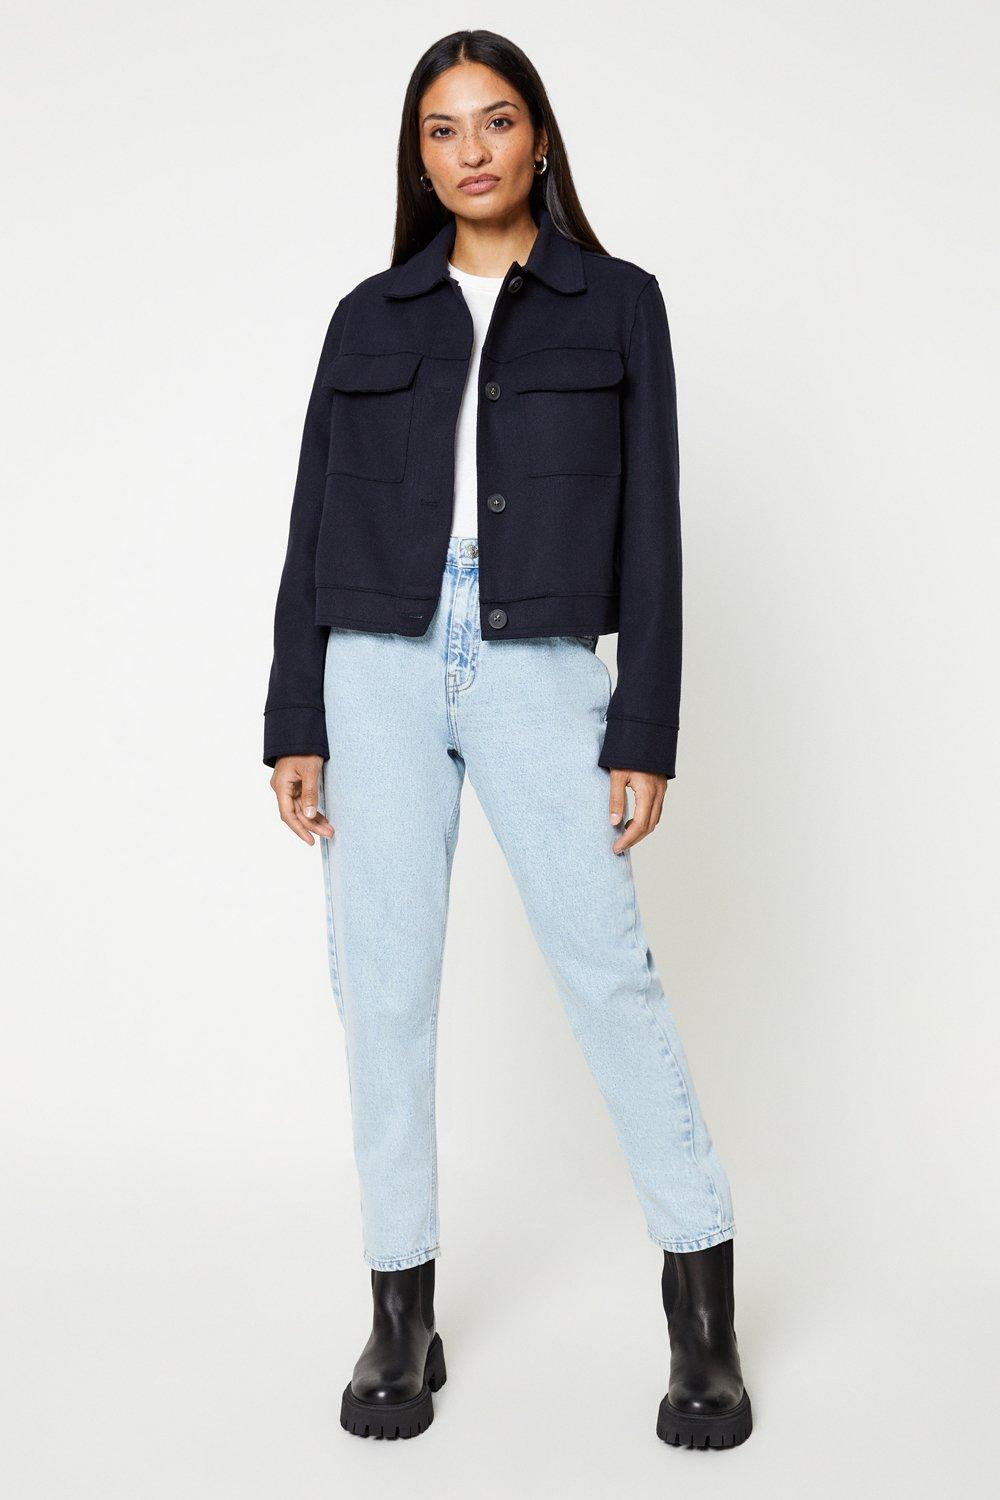 Women’s Wool Look Cropped Jacket - navy - L